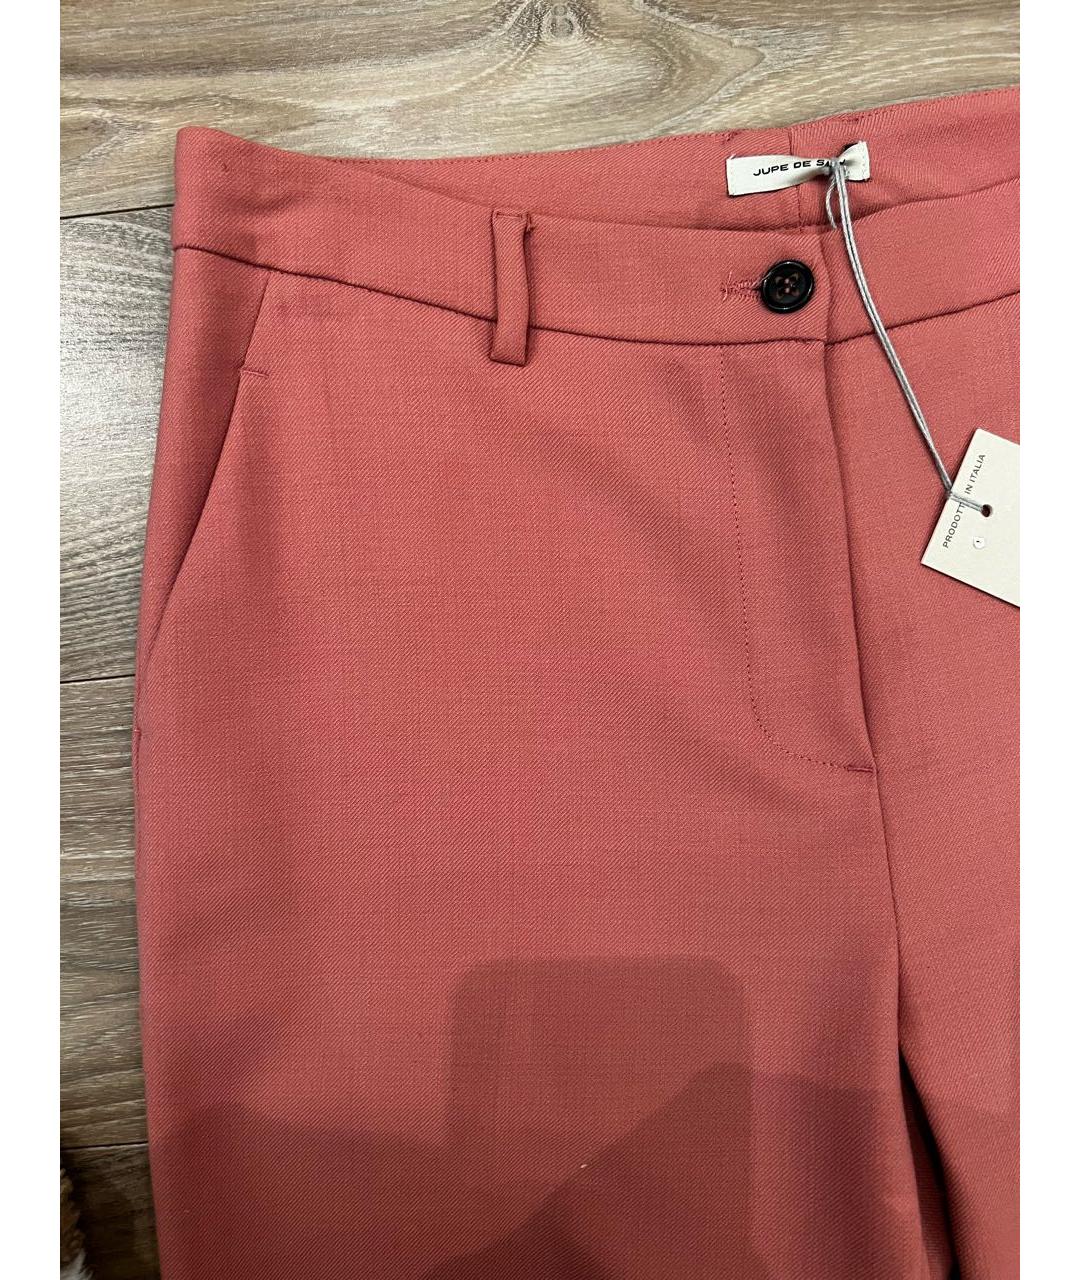 JUPE DE SATIN Розовые шерстяные брюки узкие, фото 4